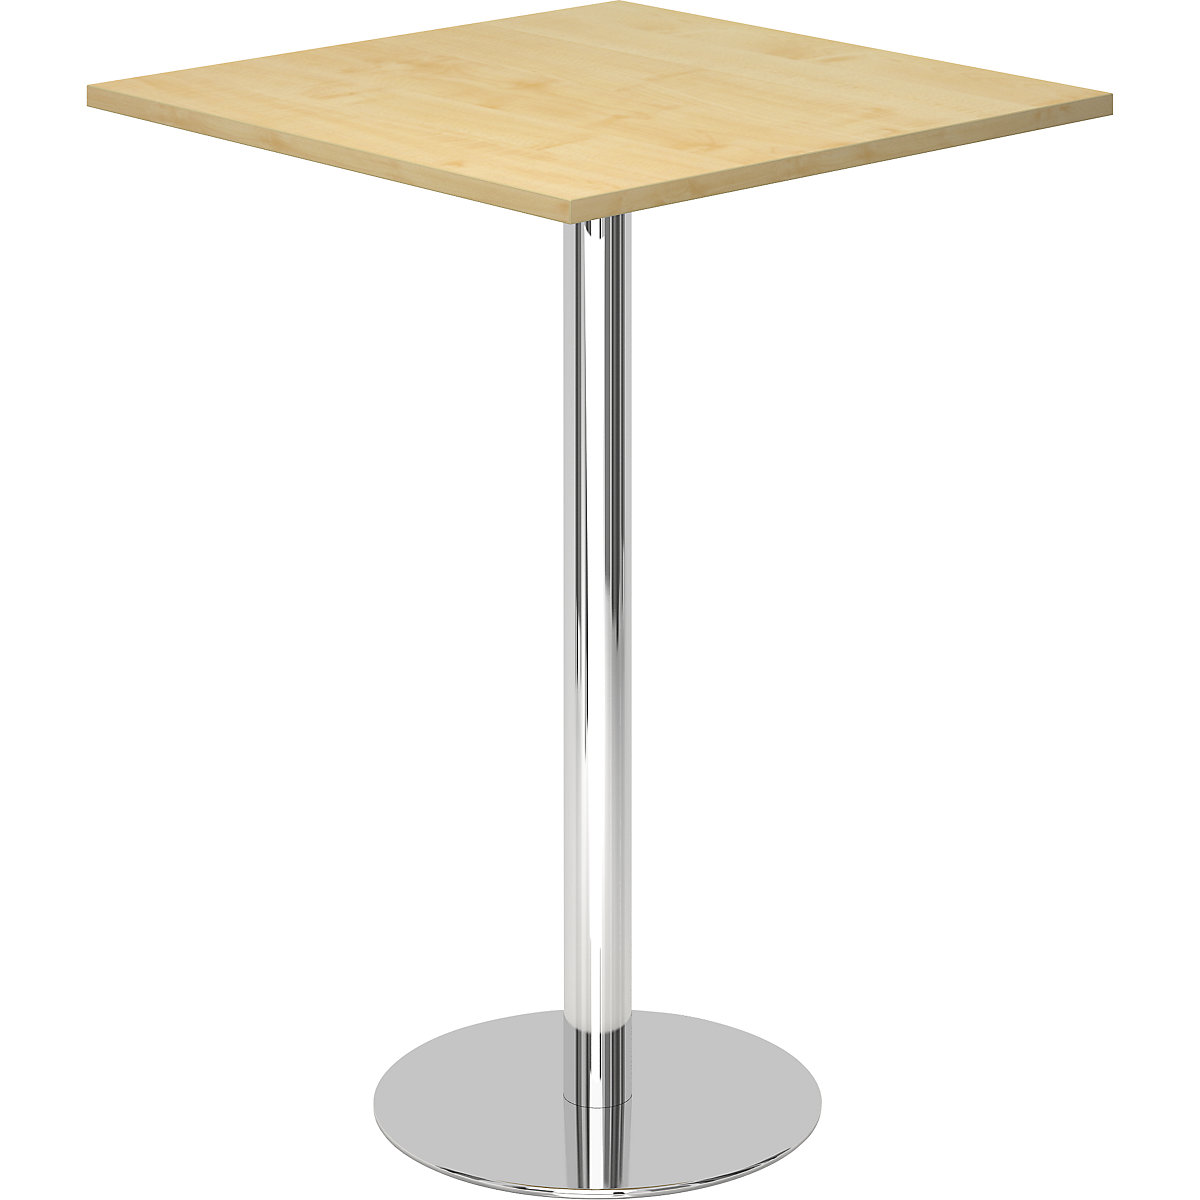 Állóasztal, h x szé 800 x 800 mm, 1116 mm magas, krómozott váz, juhar-dekor asztallap